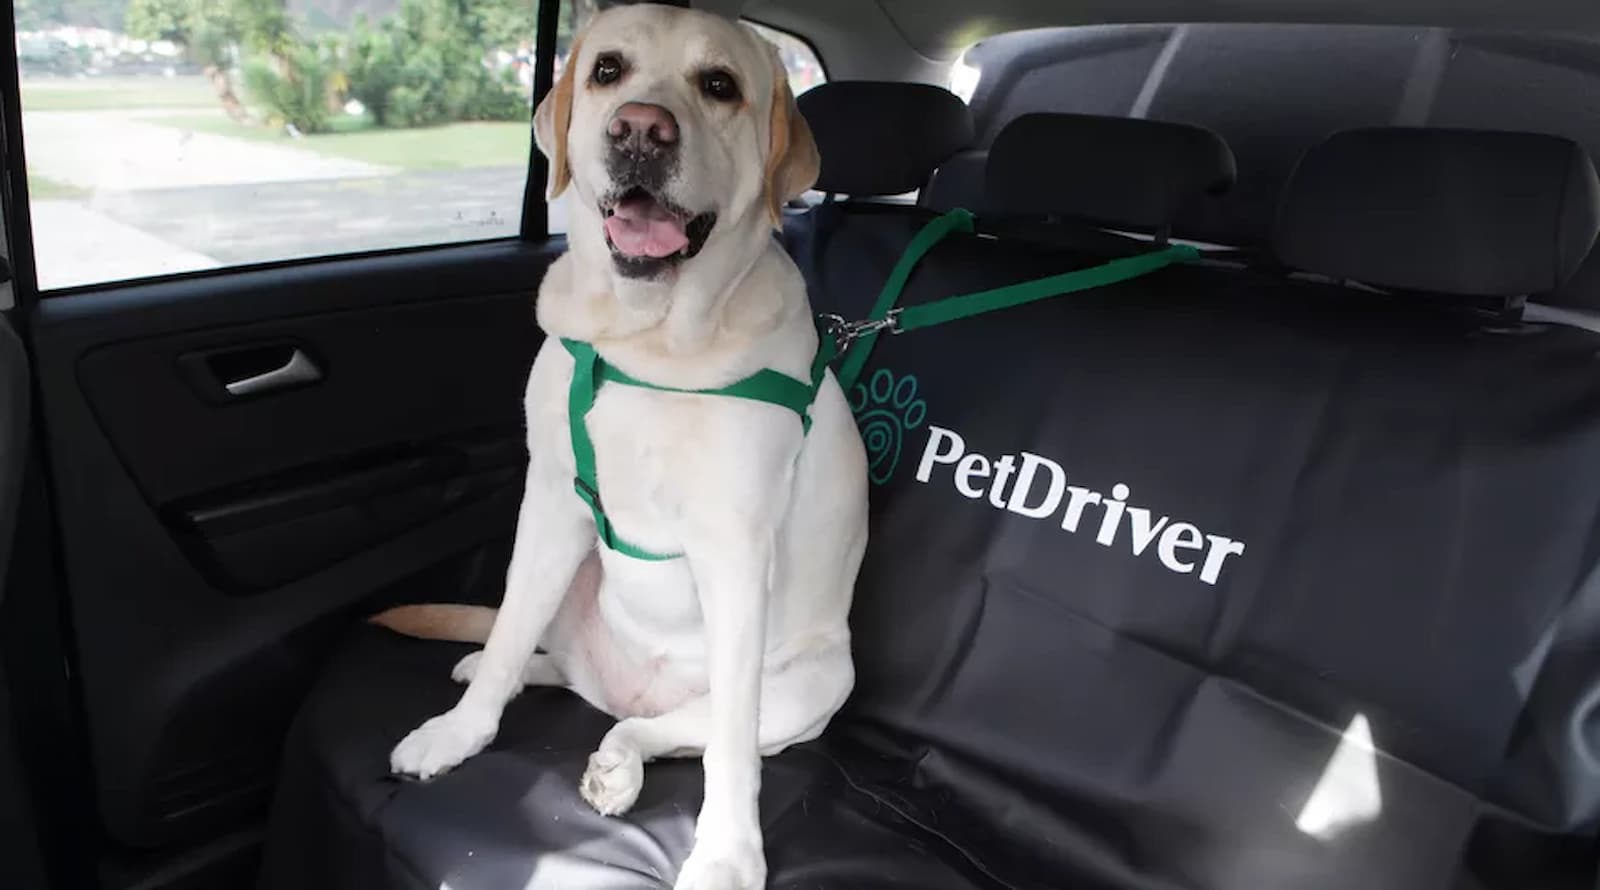 Pet driver